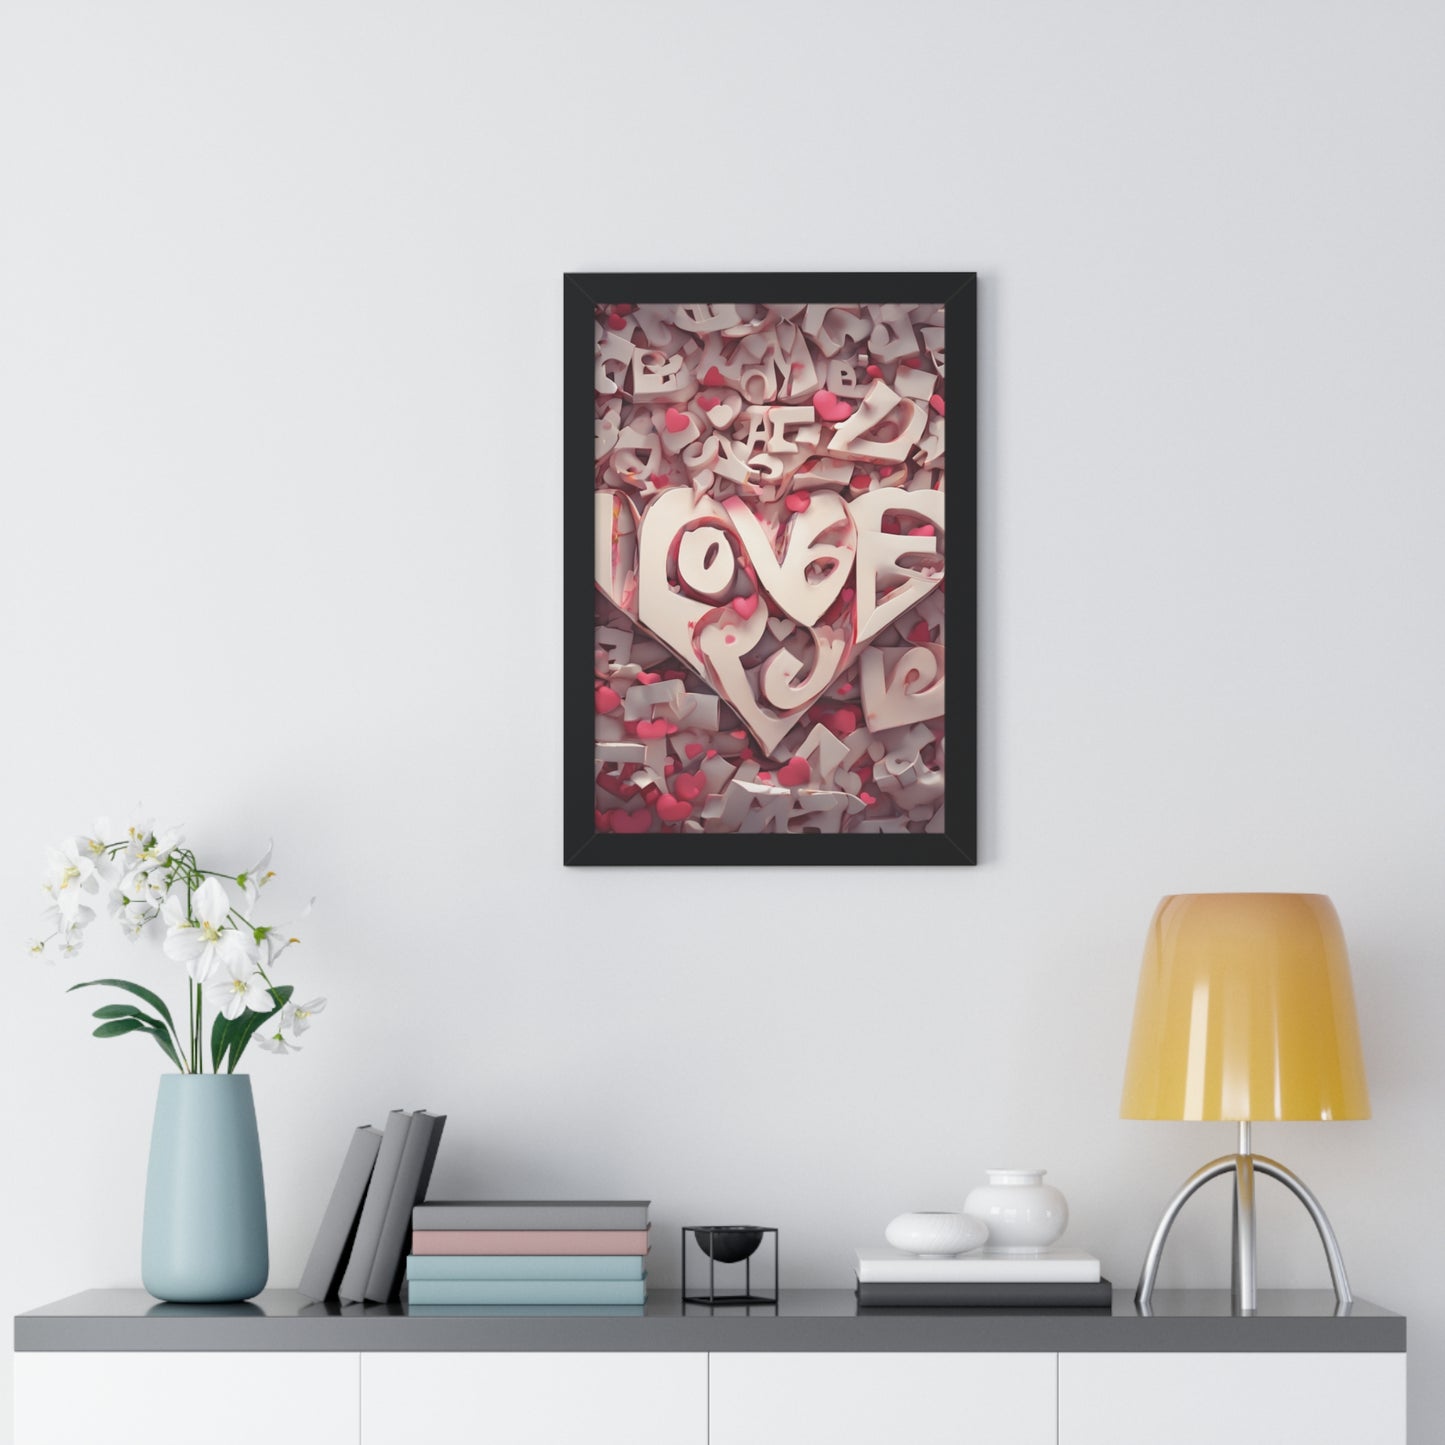 Embrace Love's Radiance Love Crazy Framed Poster